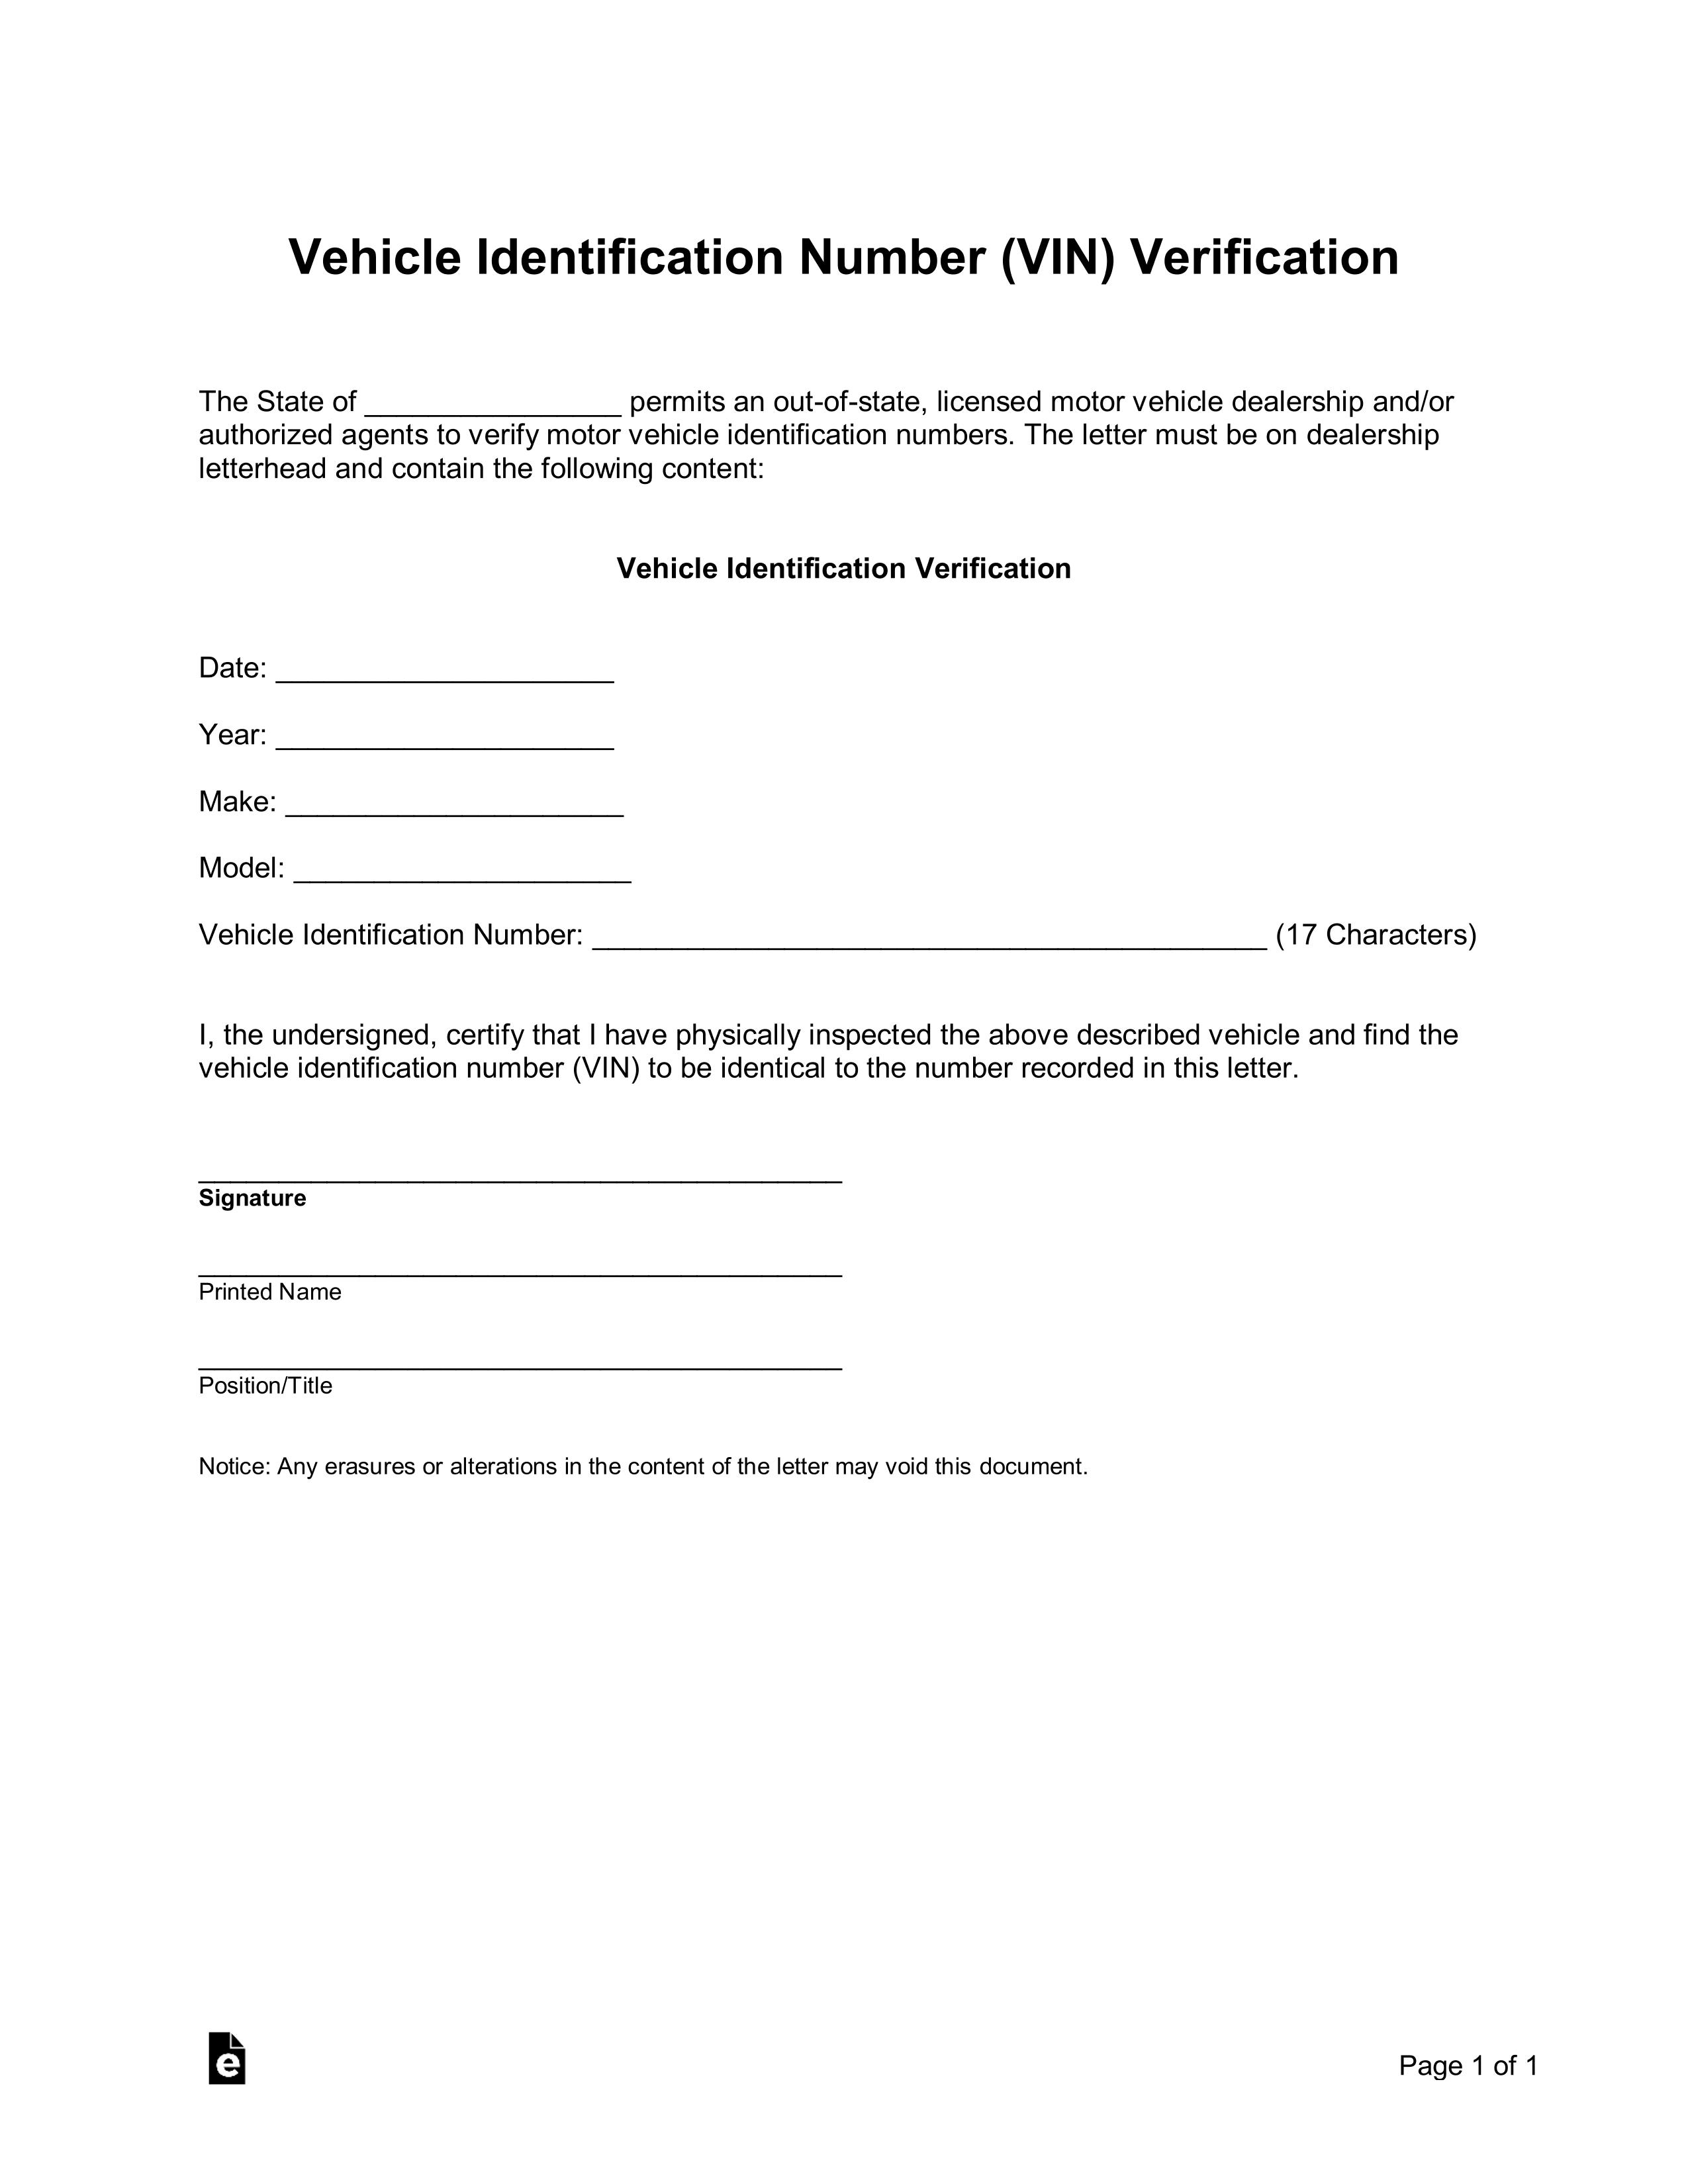 VIN Verification Form